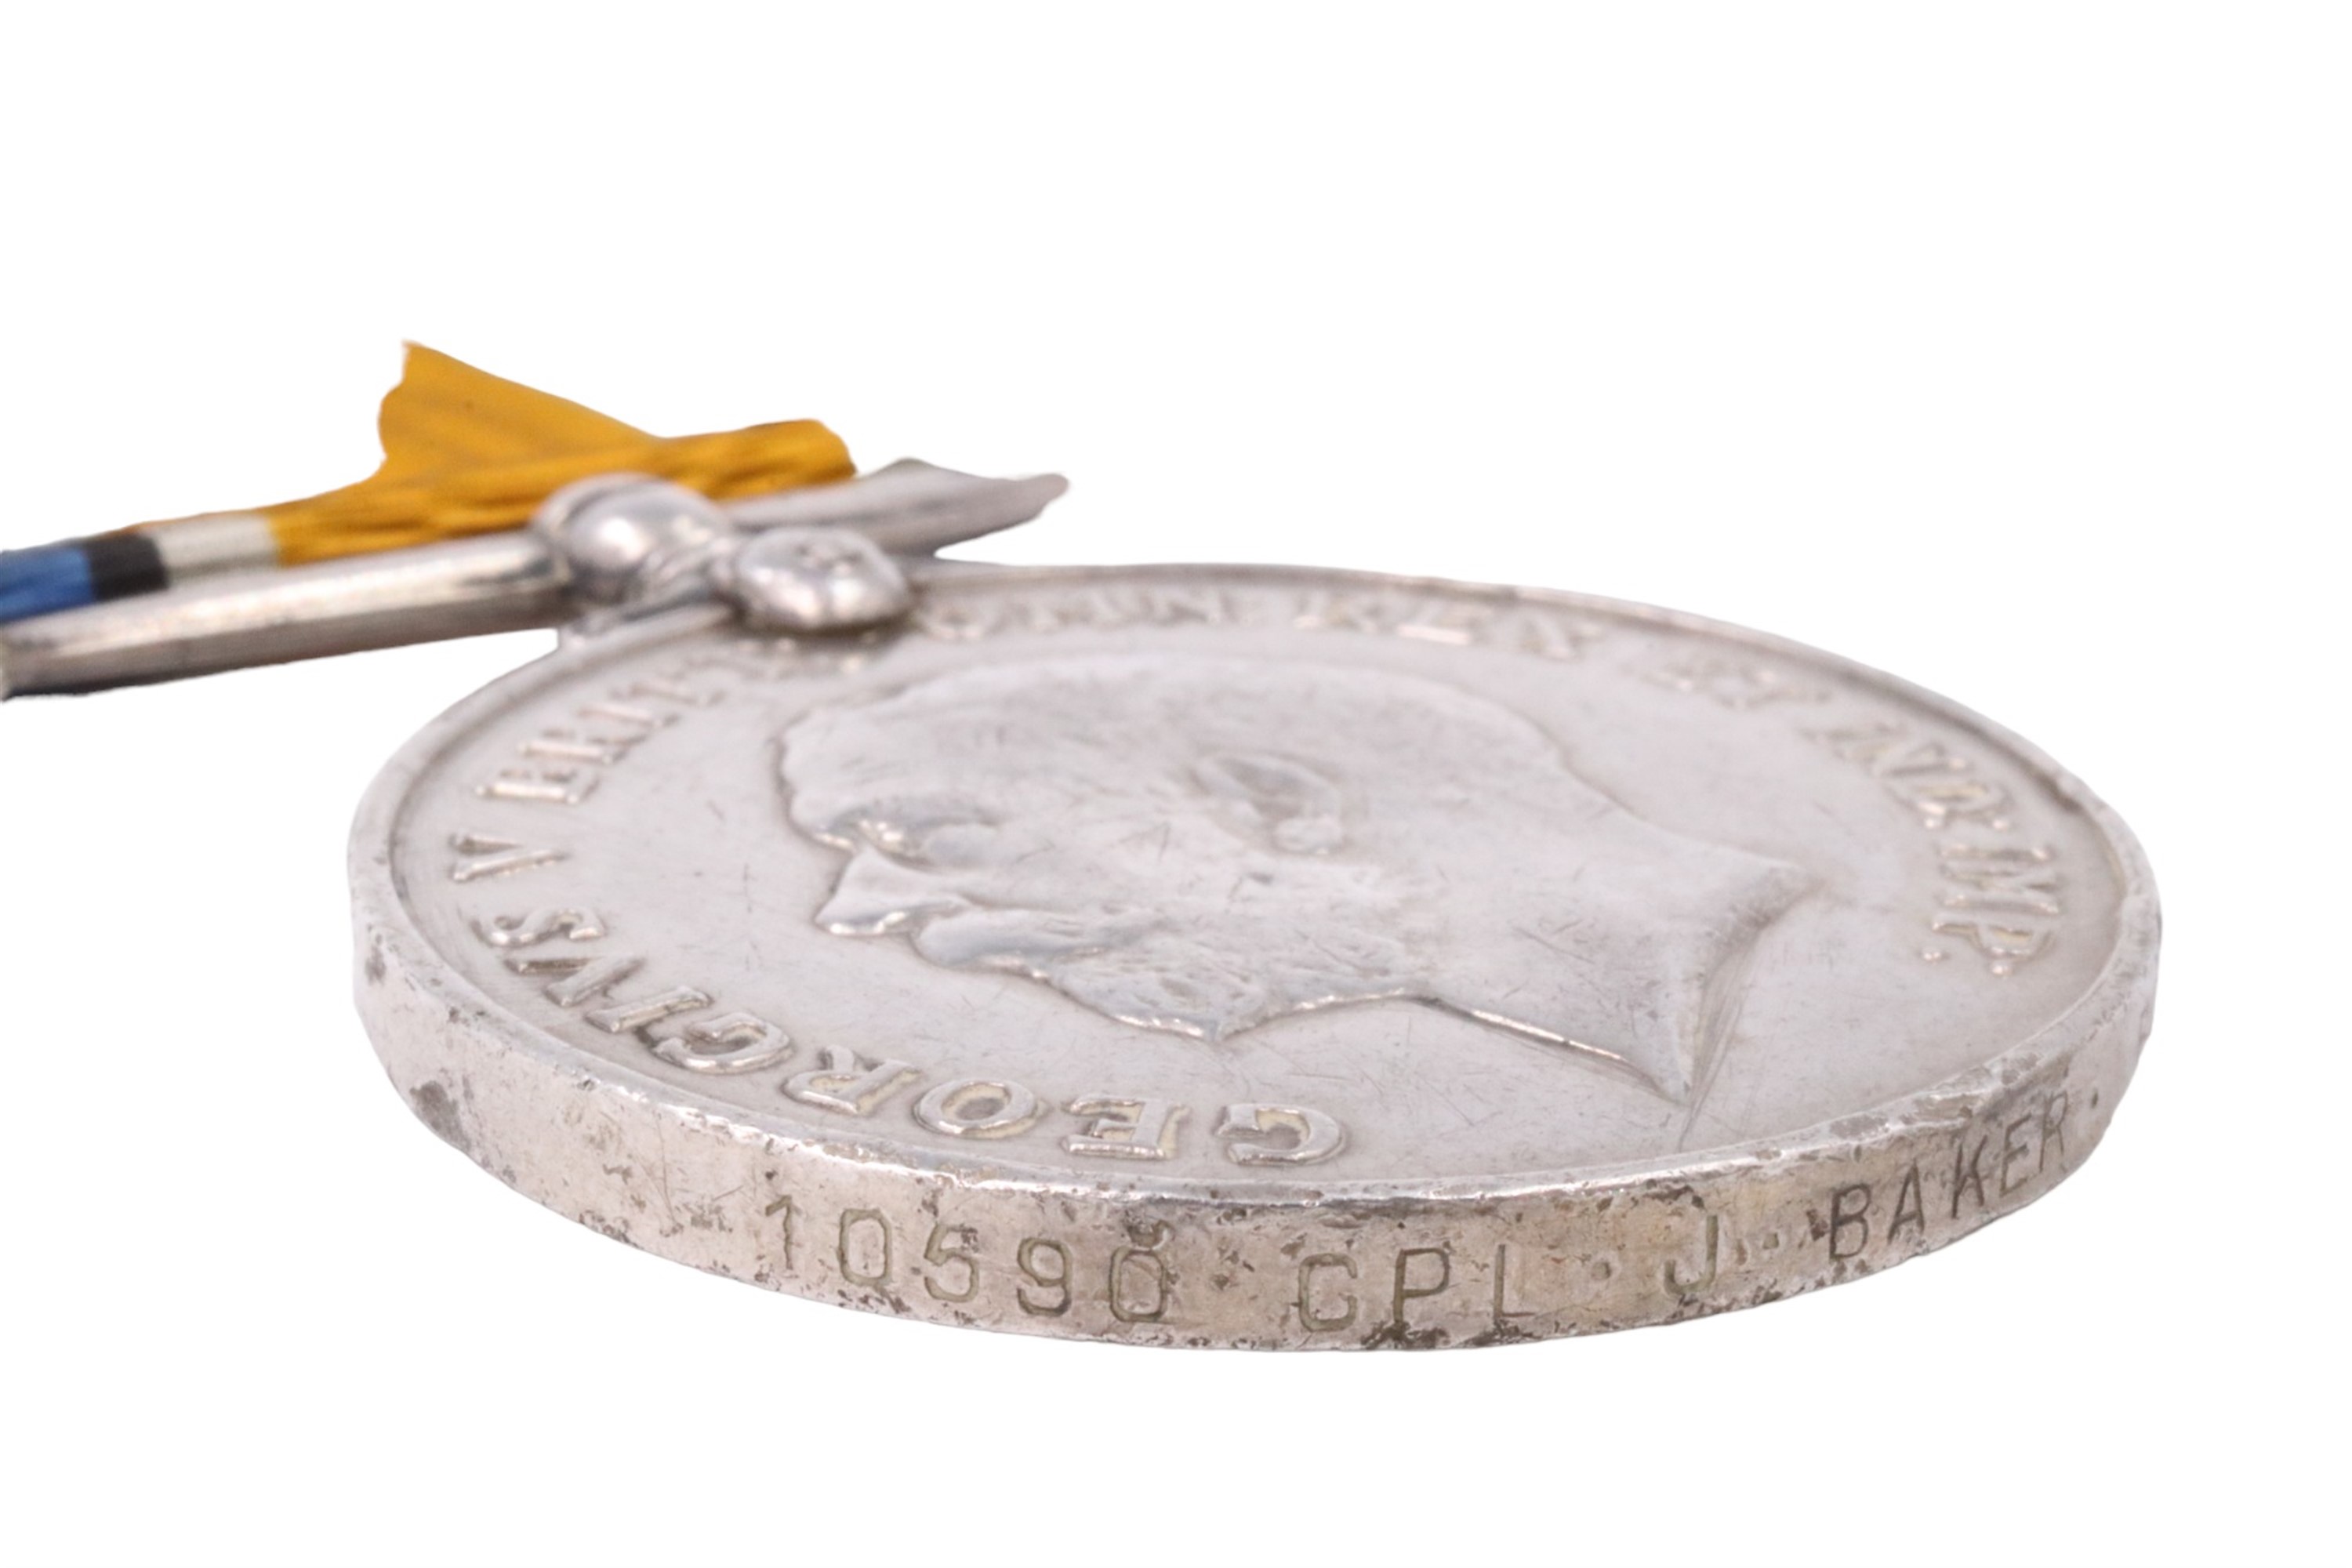 A British War Medal to 10590 Corp. James Baker, 2nd Border Regiment - Image 3 of 5